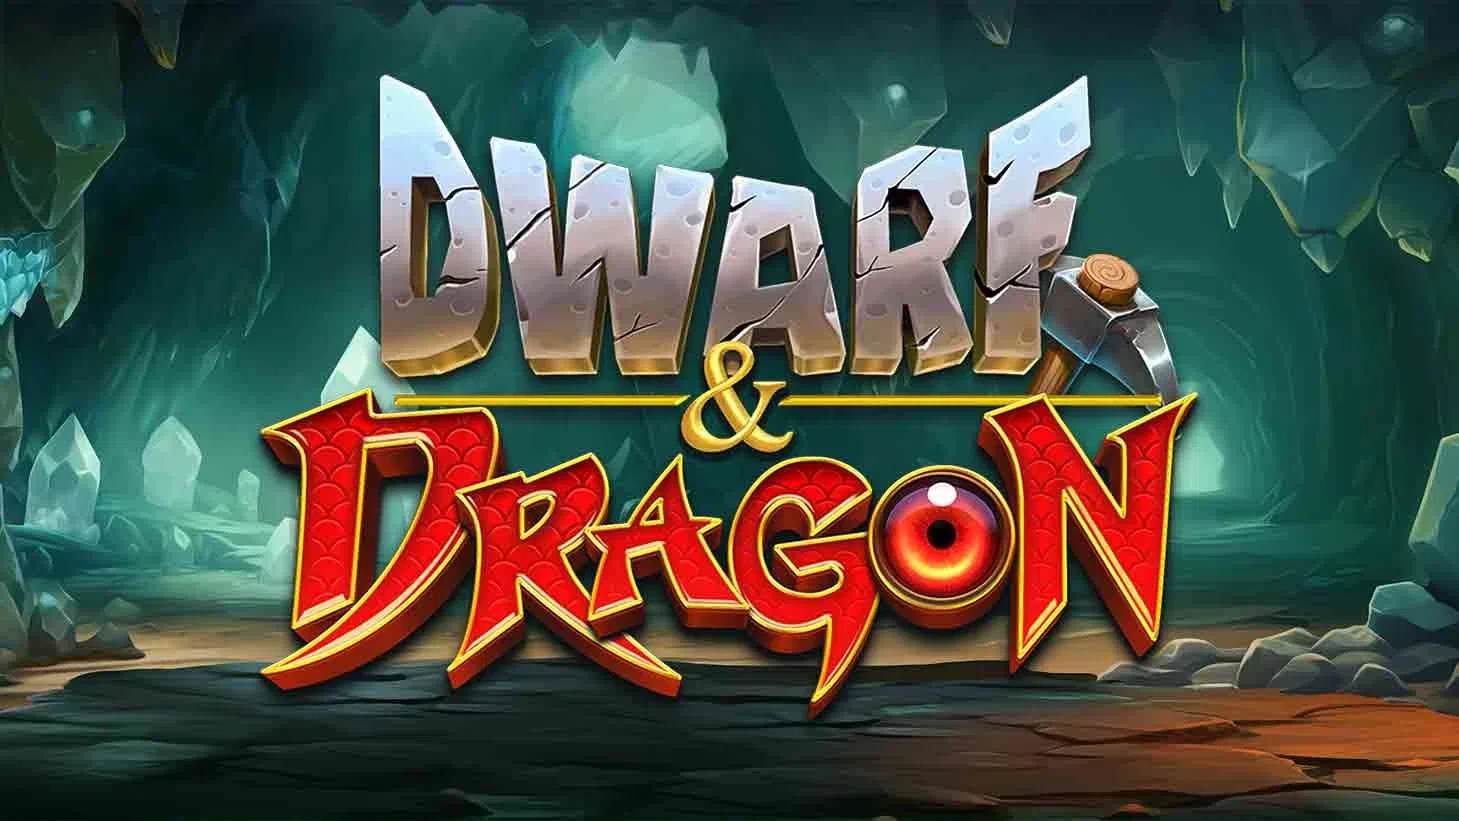 Dwarf & Dragon